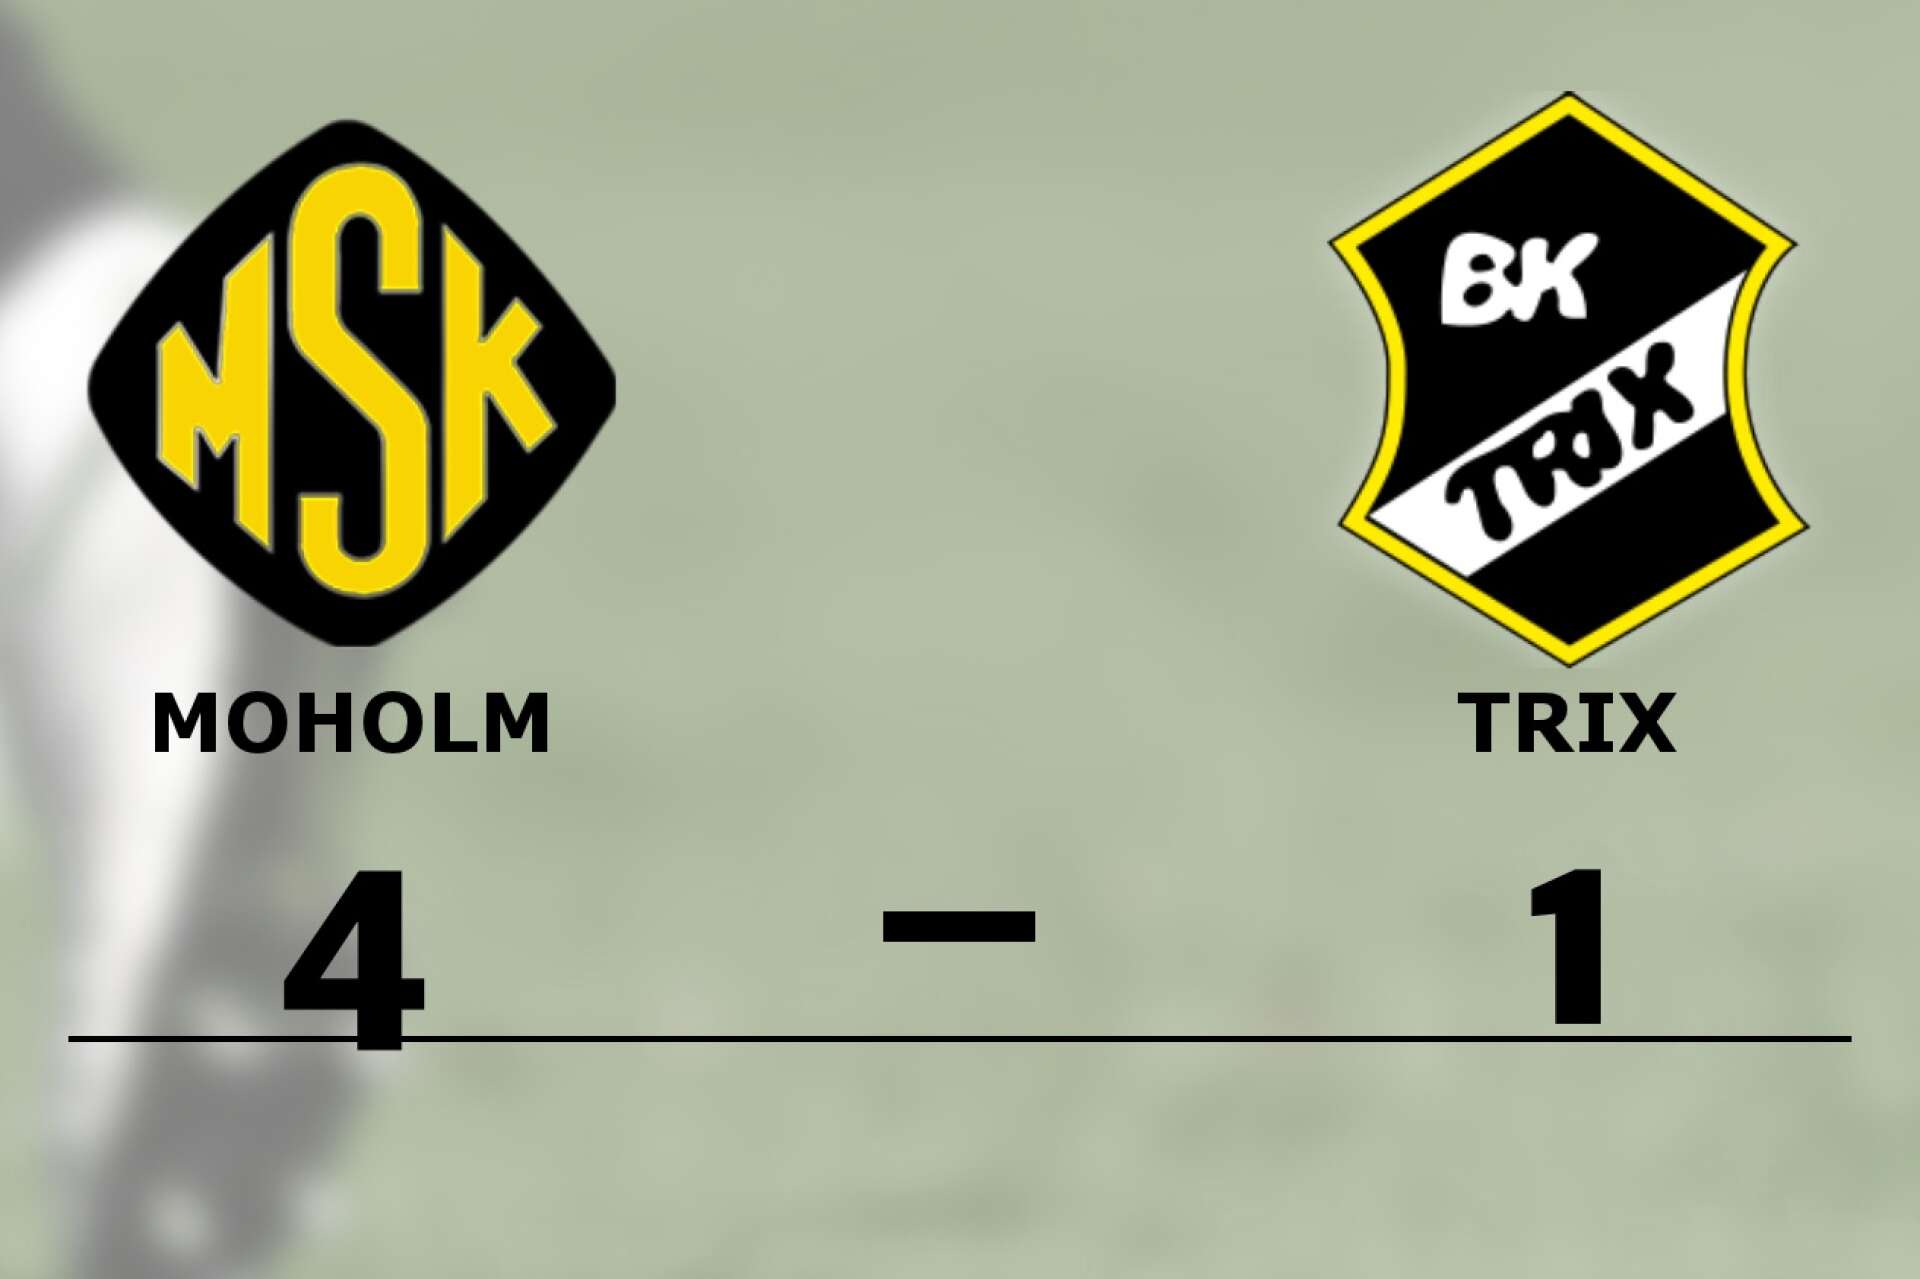 Moholms SK vann mot BK Trix